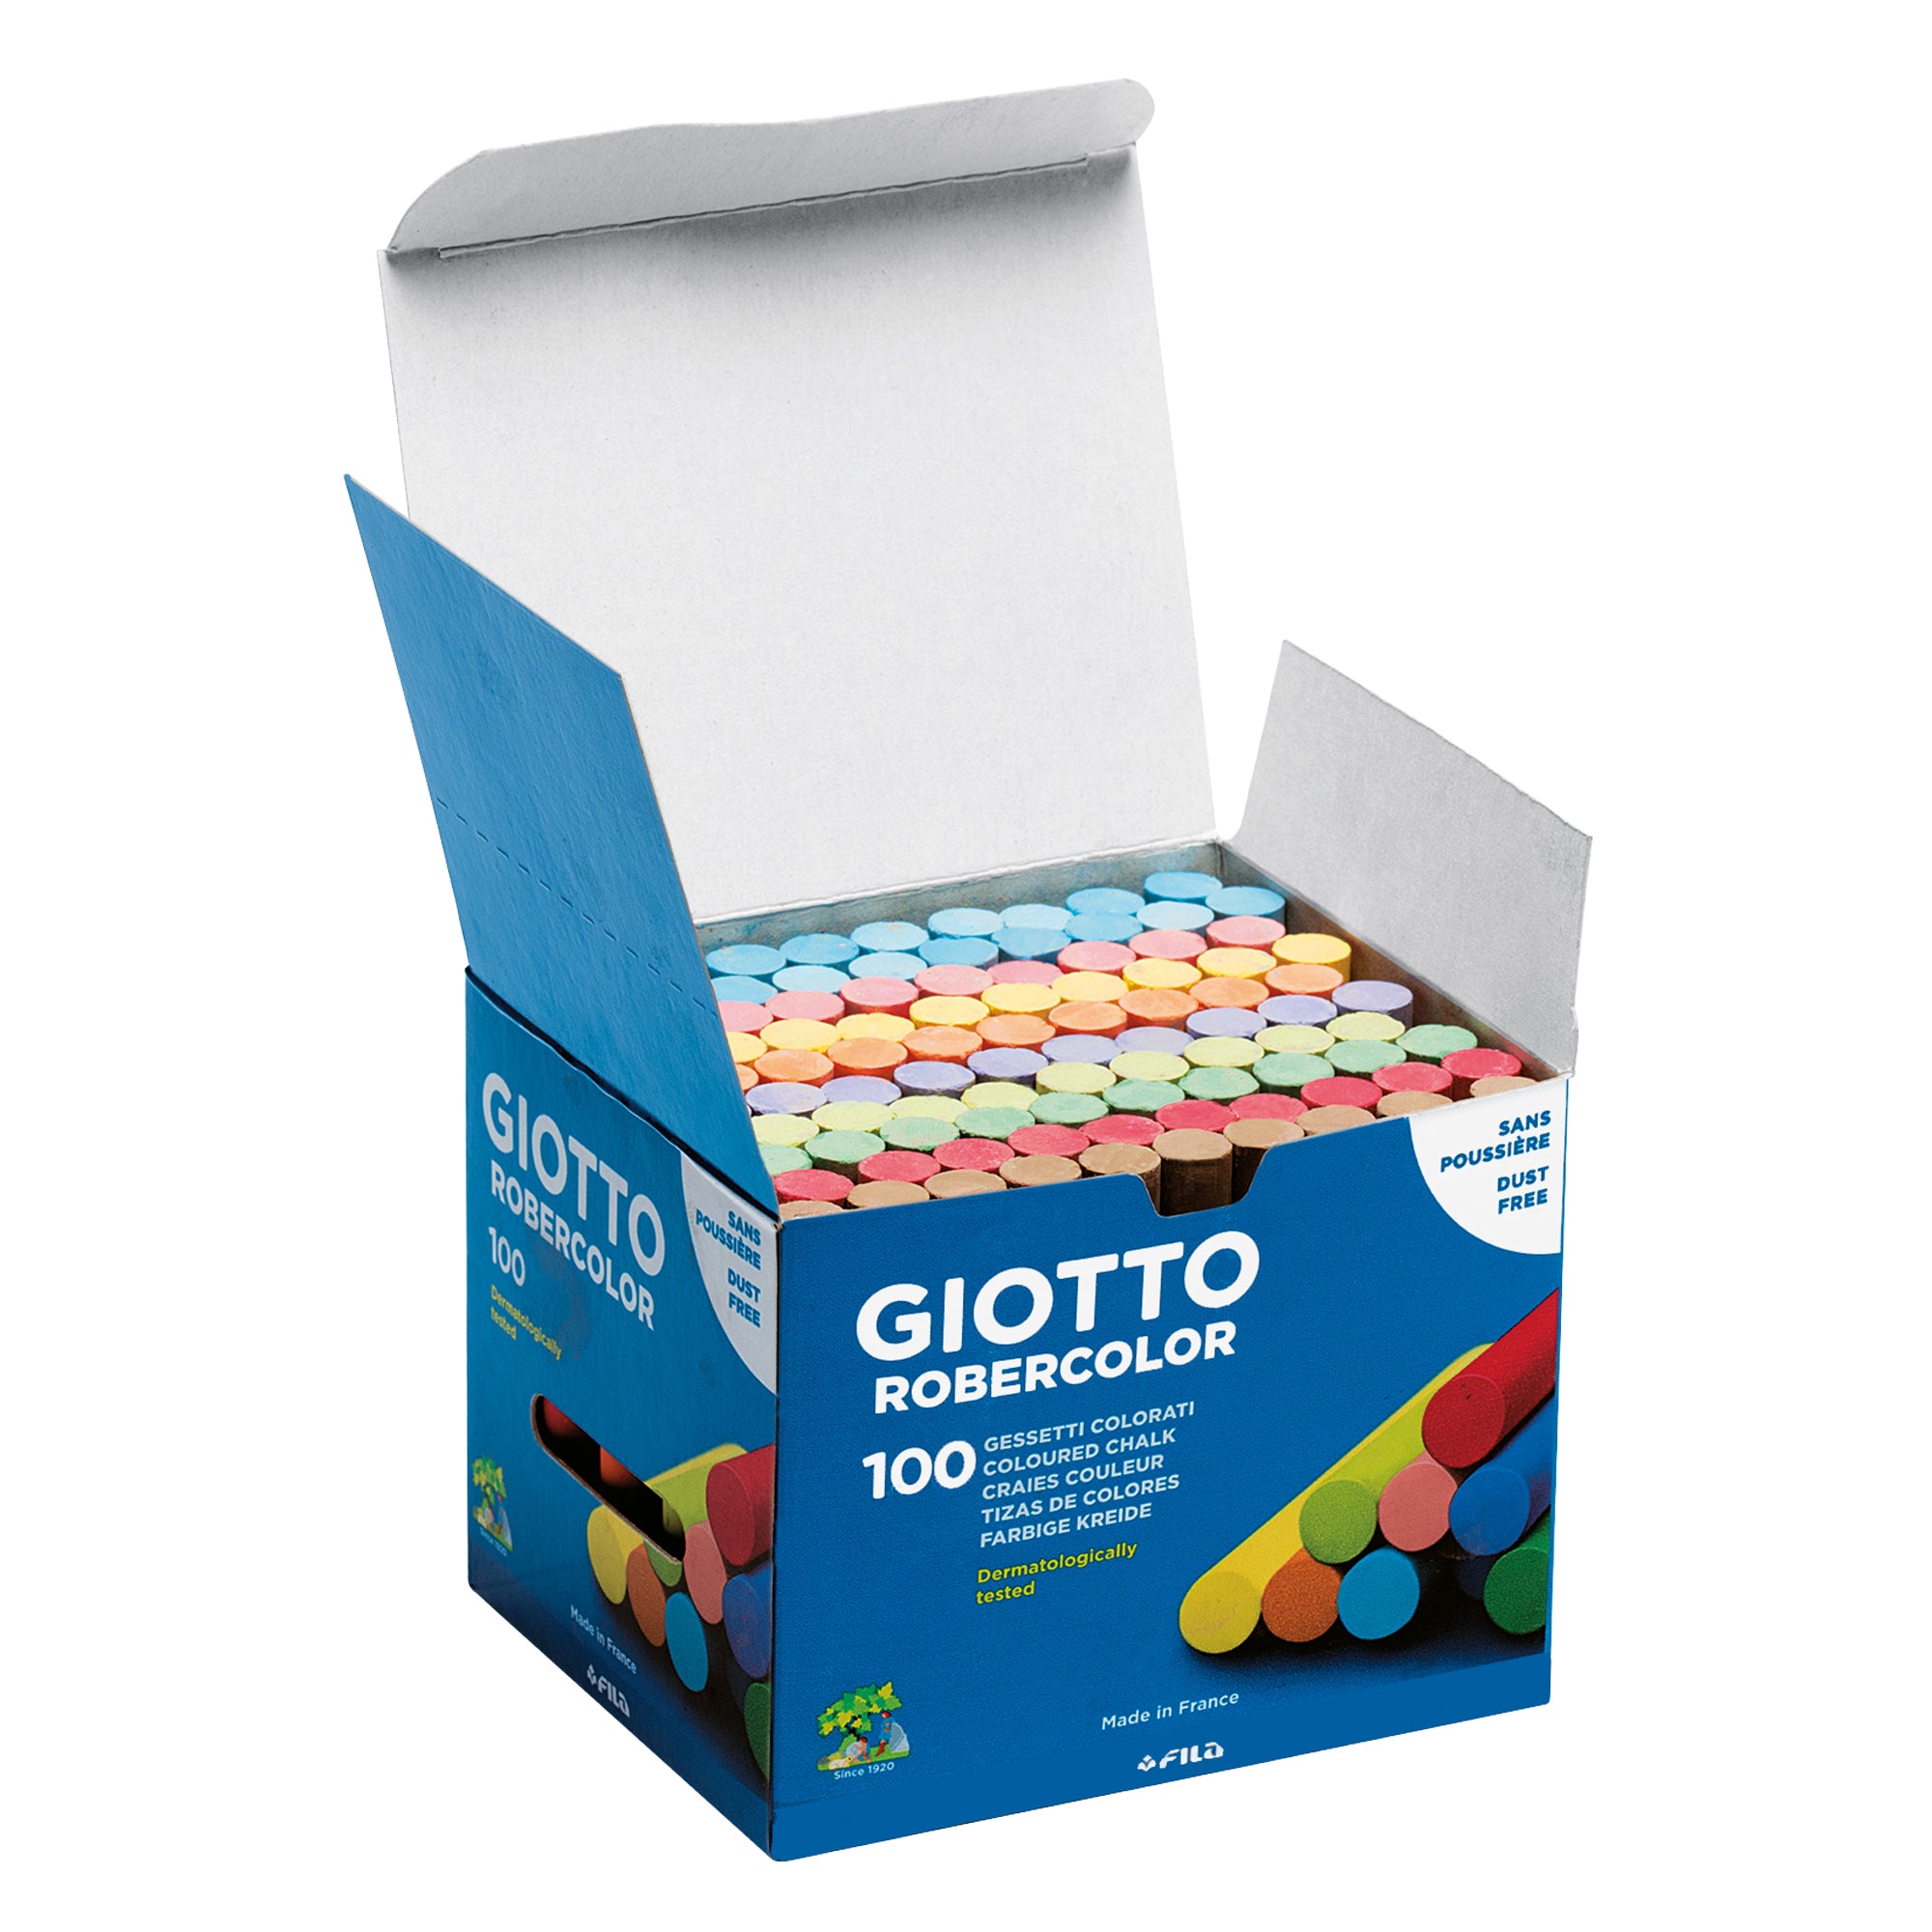 giotto-scatola-100-gessetti-tondi-colorati